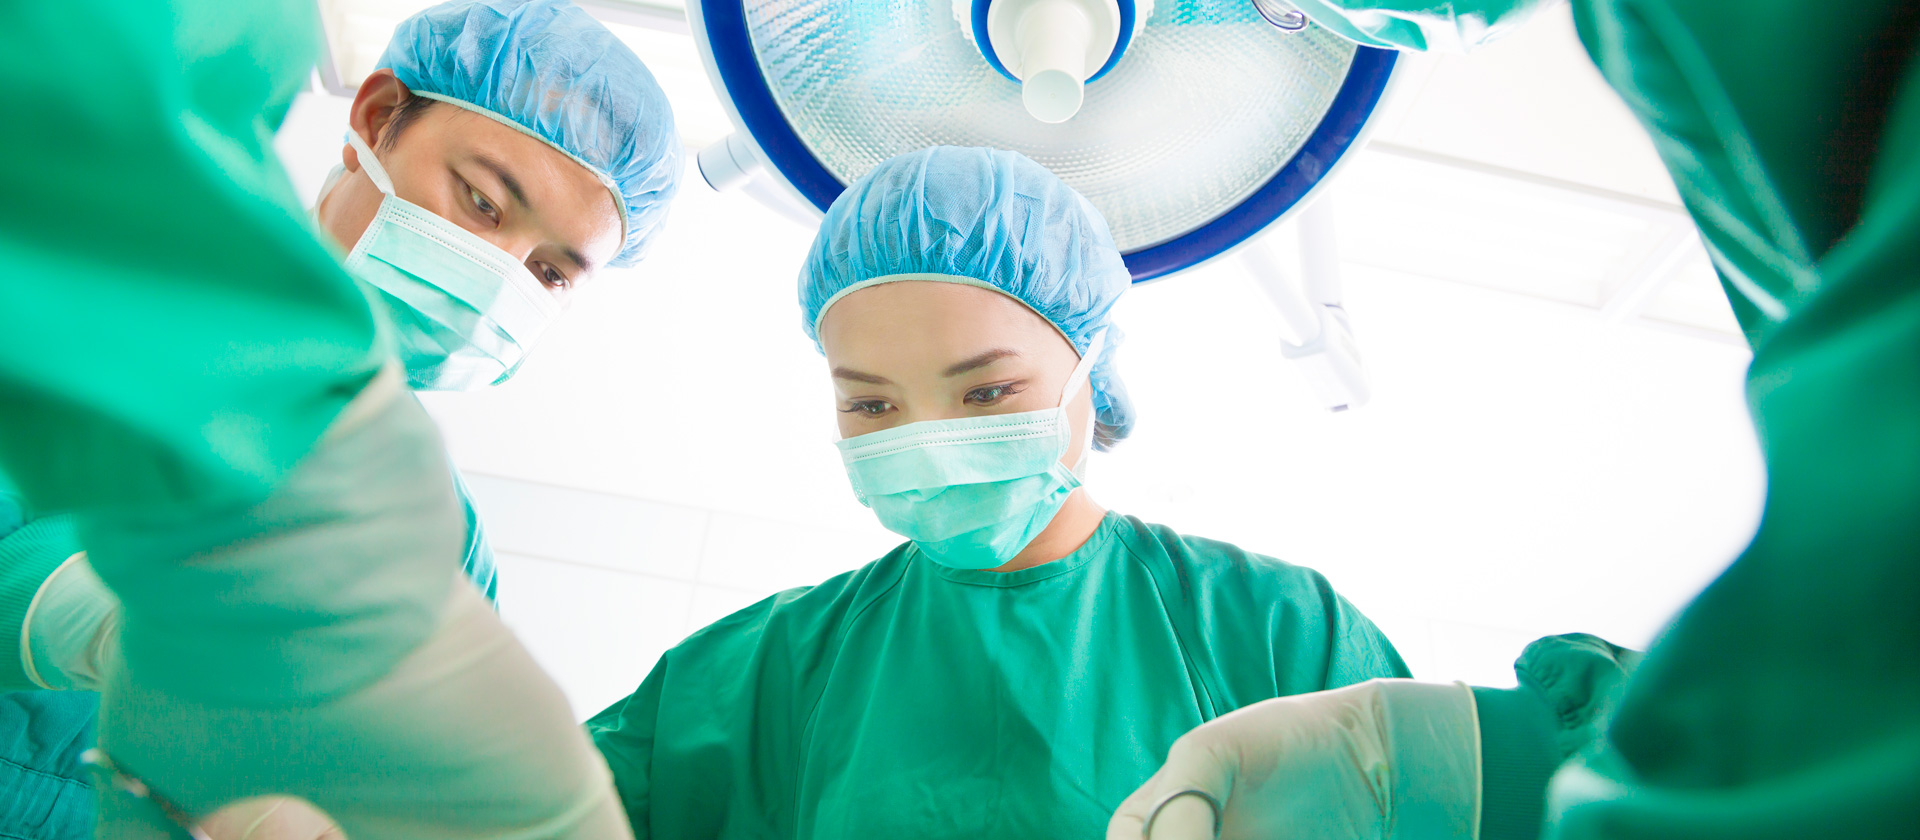 surgeons in scrubs operating